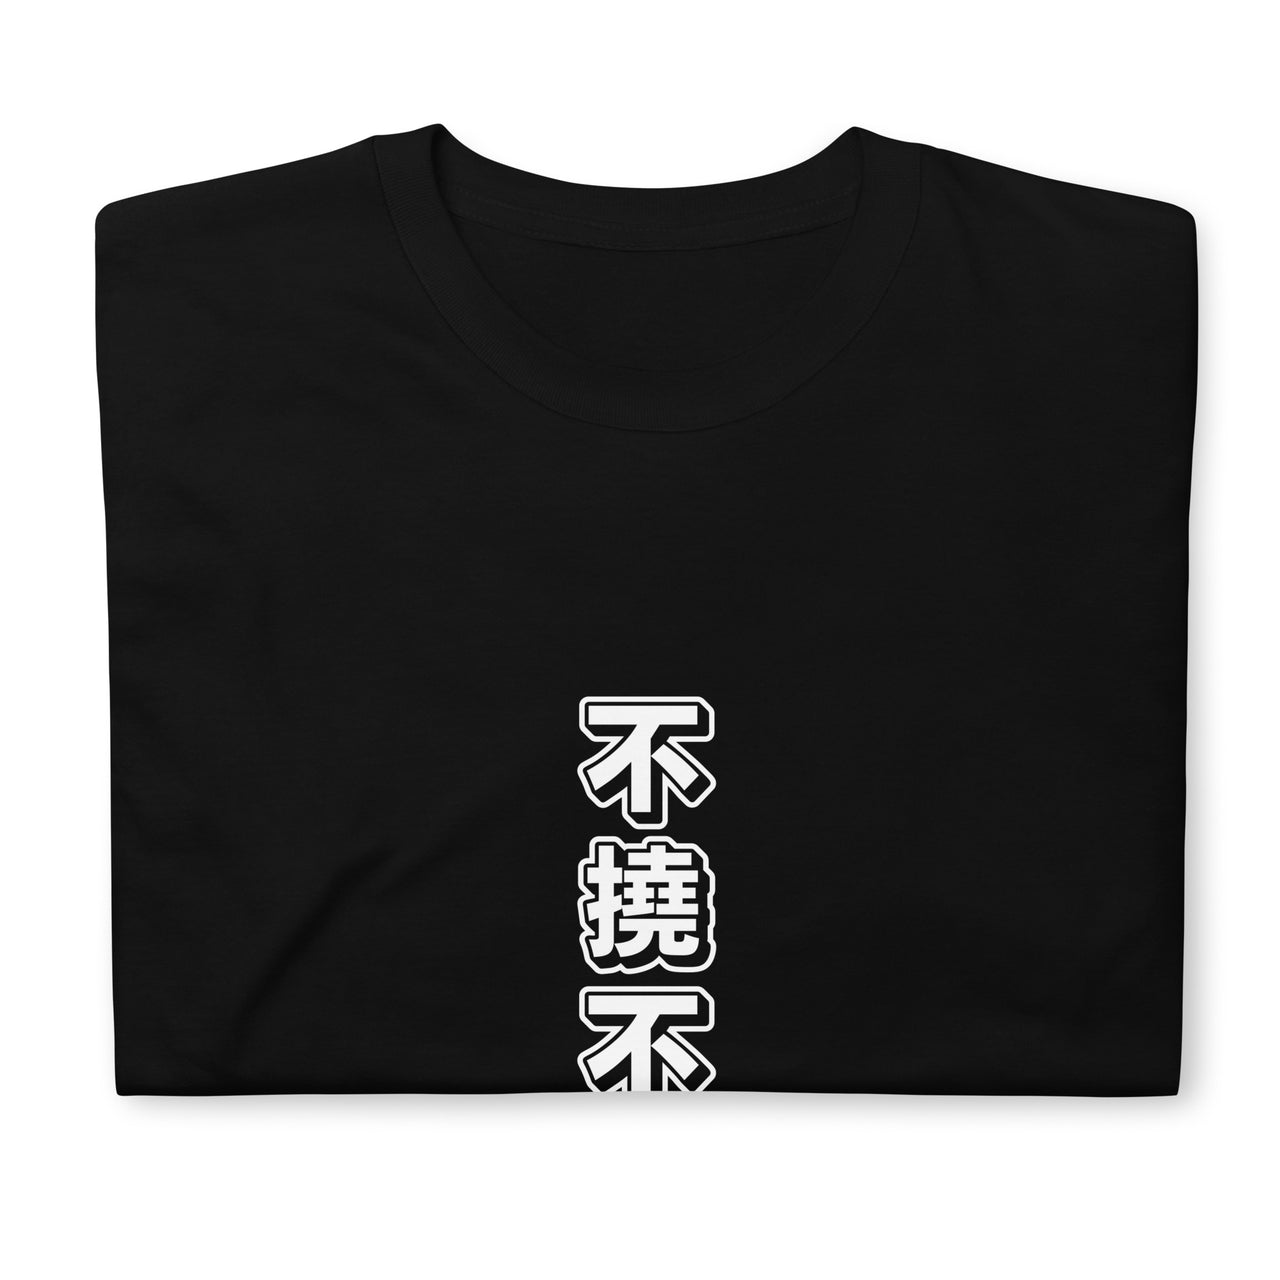 Futou Fukutsu Not Yielding in Japanese T-Shirt